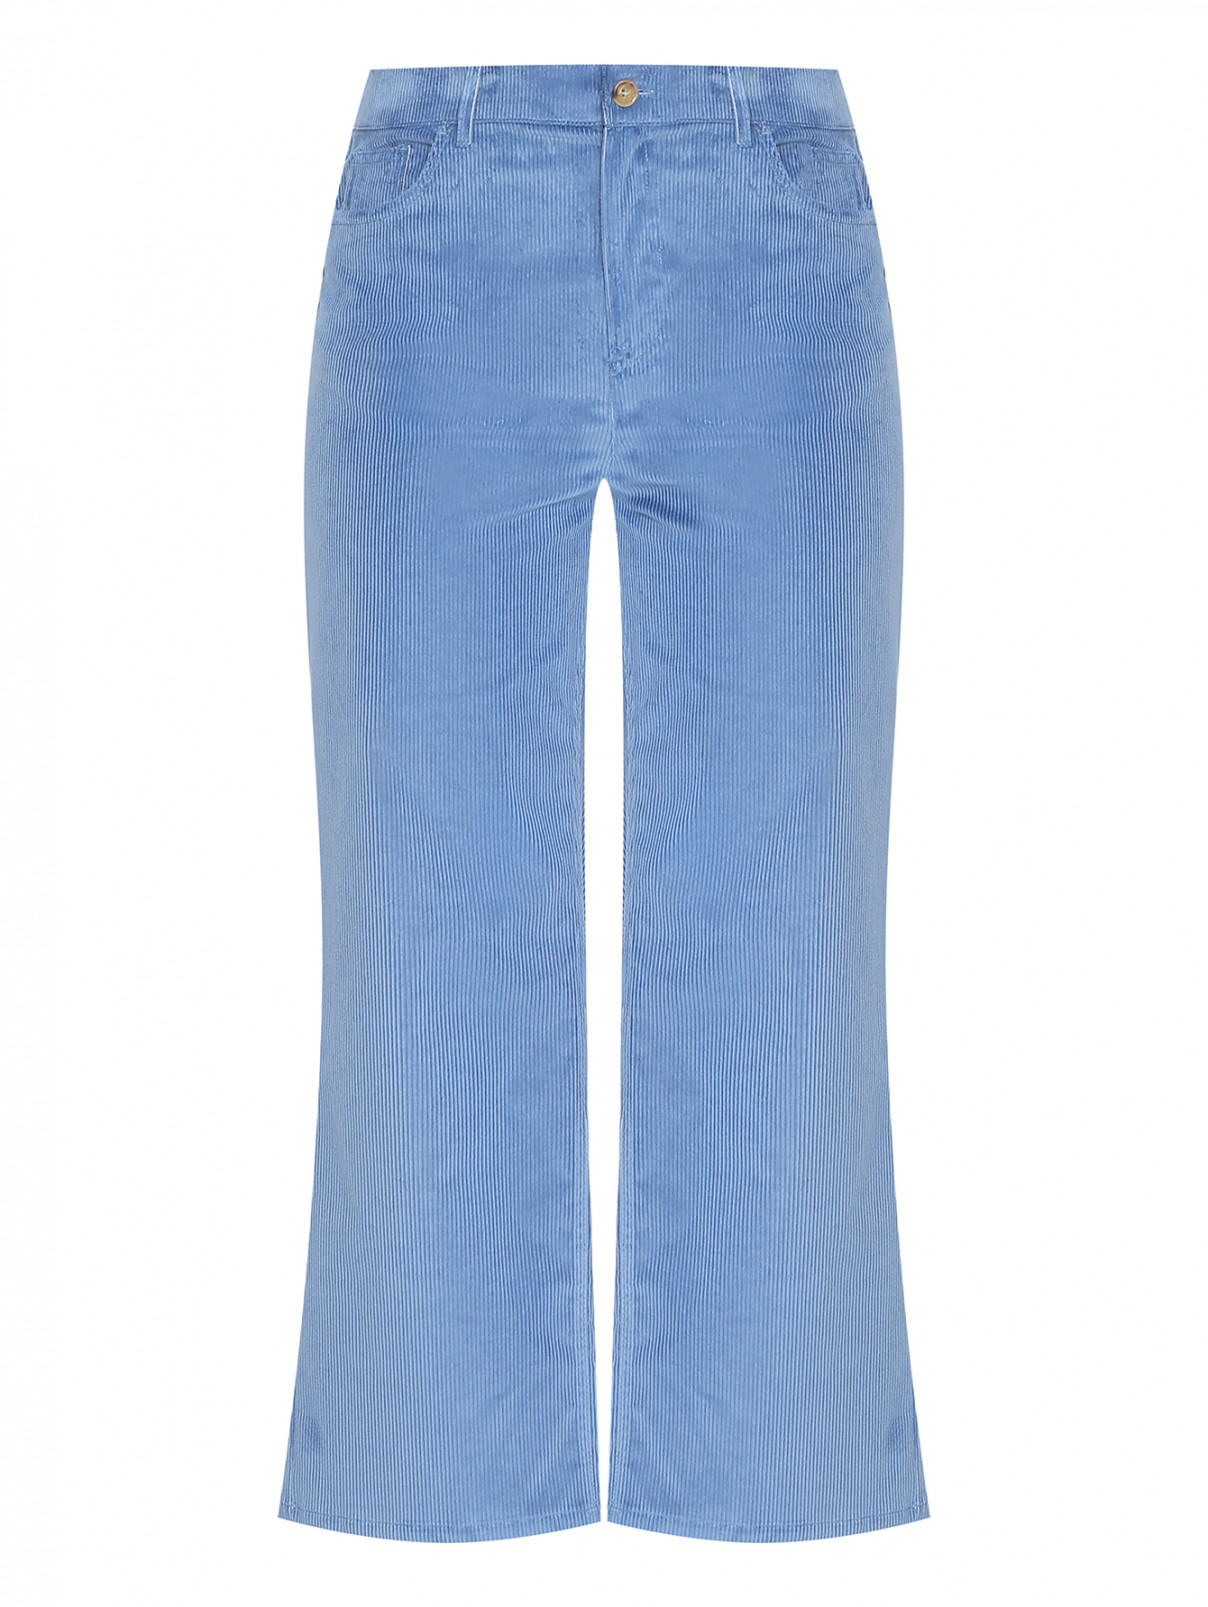 Вельветовые брюки из смешанного хлопка Marina Rinaldi  –  Общий вид  – Цвет:  Синий